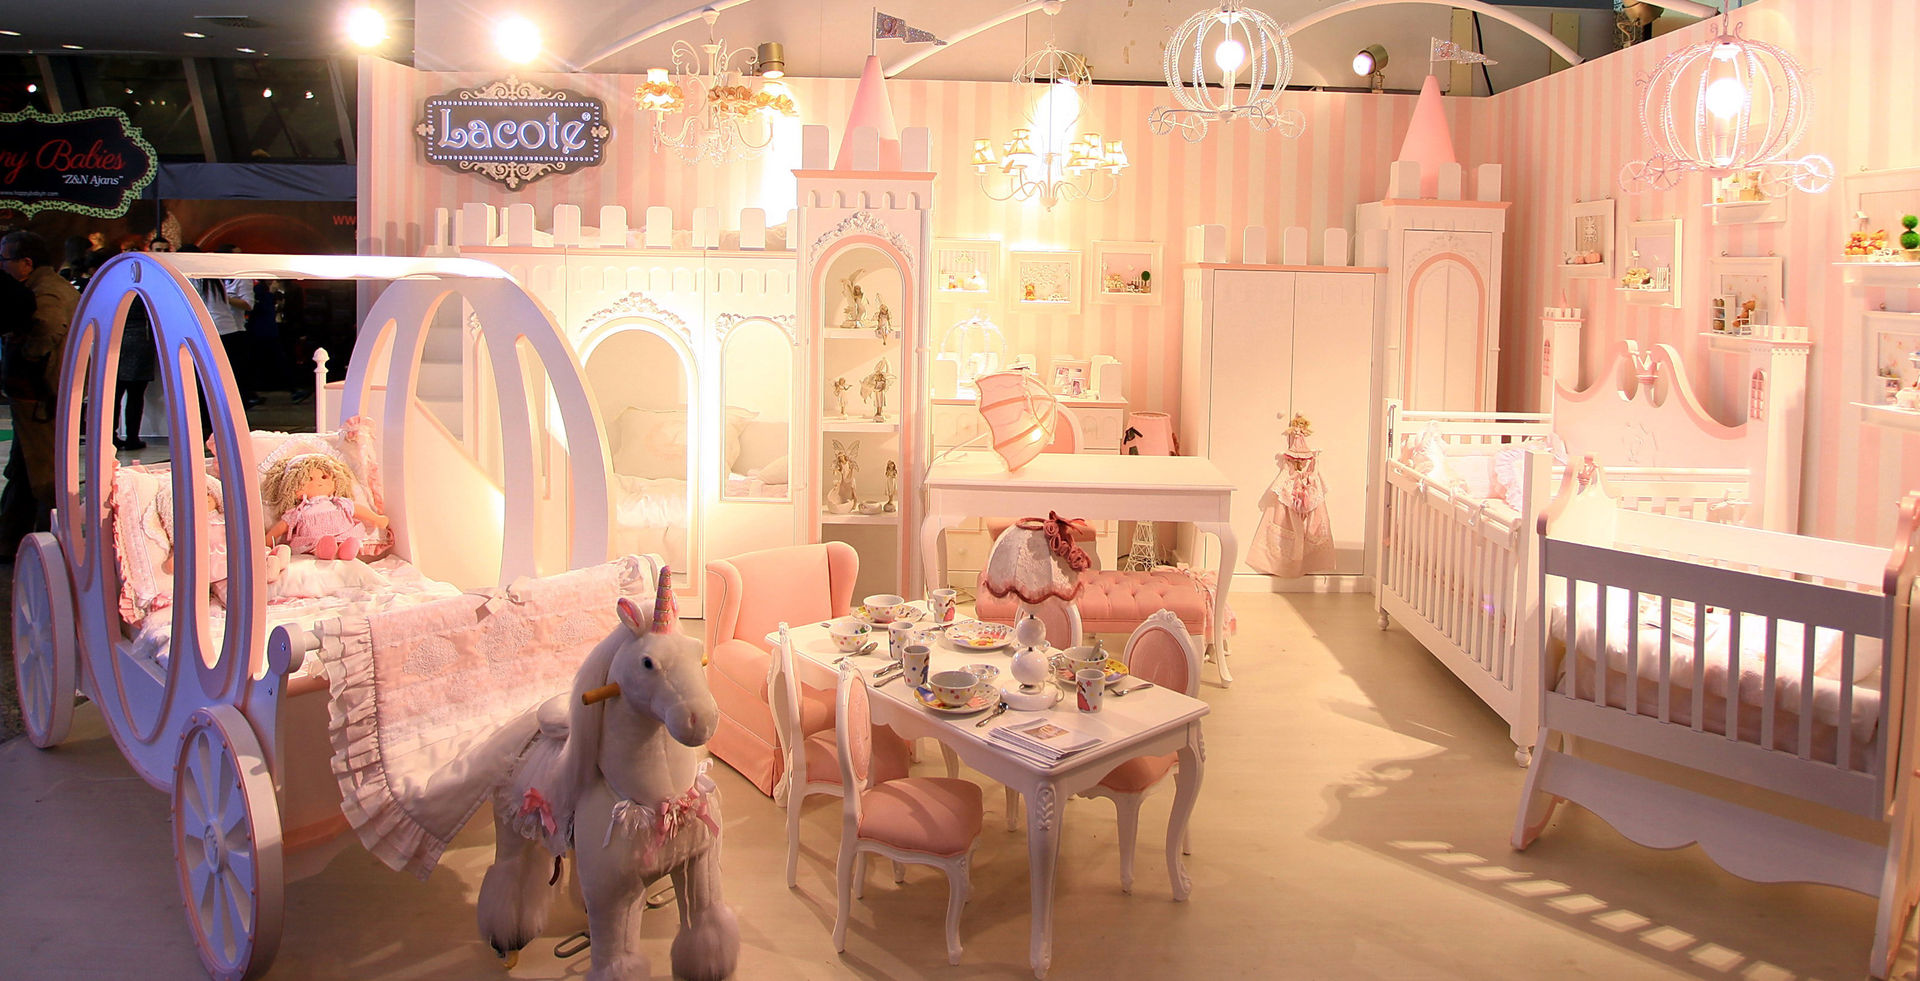 Lacote prenses çocuk ve bebek odası tasarımları, Lacote Design Lacote Design モダンデザインの 子供部屋 ベッド＆ベビーベッド